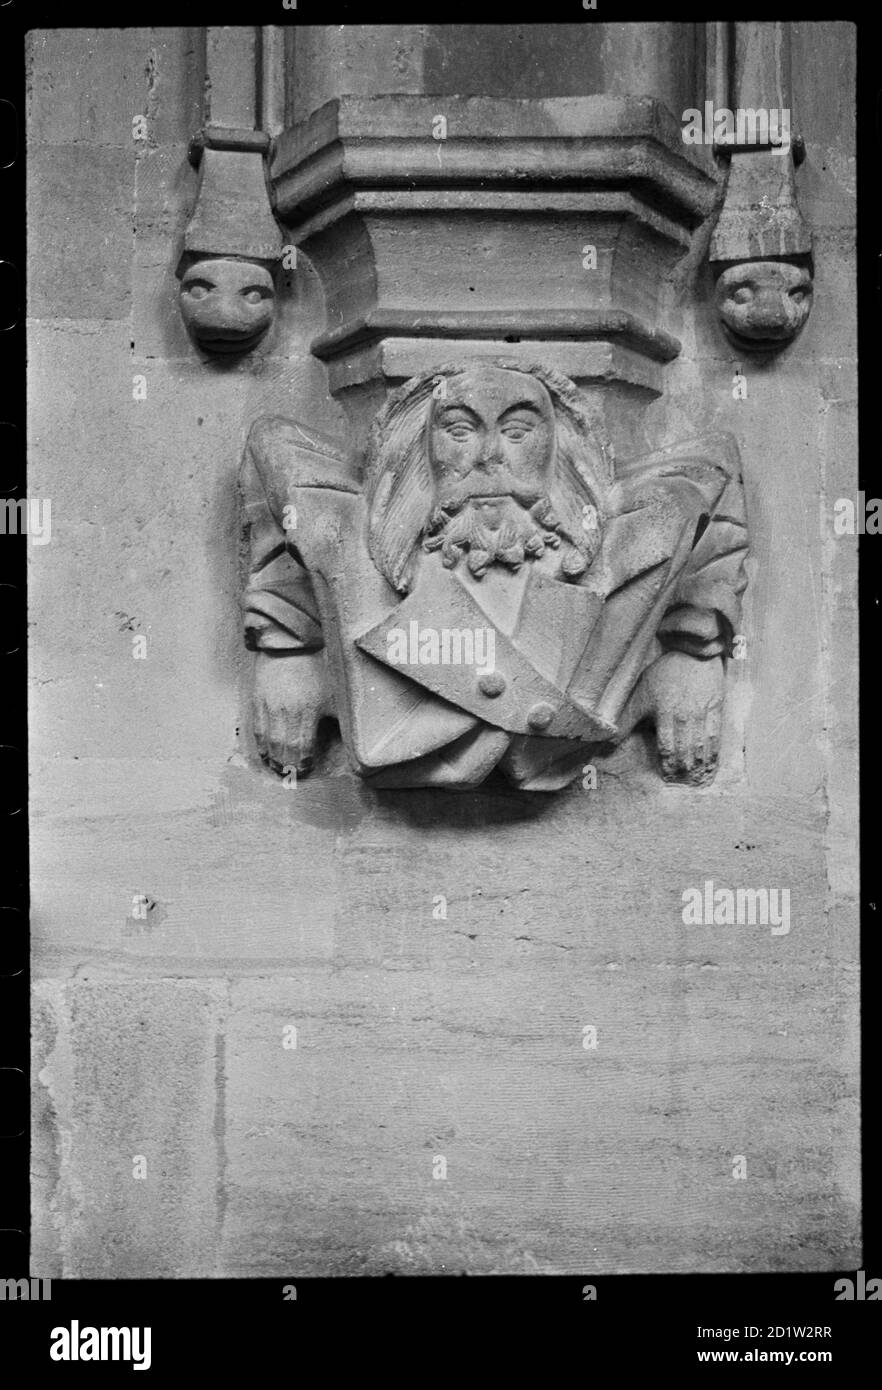 Gros plan d'un buste corbel dans l'église Sainte-Marie-la-Vierge, probablement la base d'une niche d'image crocketed, montrant un mais d'un homme avec la barbe et le pelage, semblant s'incliner hors du mur, Steeple Ashton, Wiltshire, Royaume-Uni. Banque D'Images